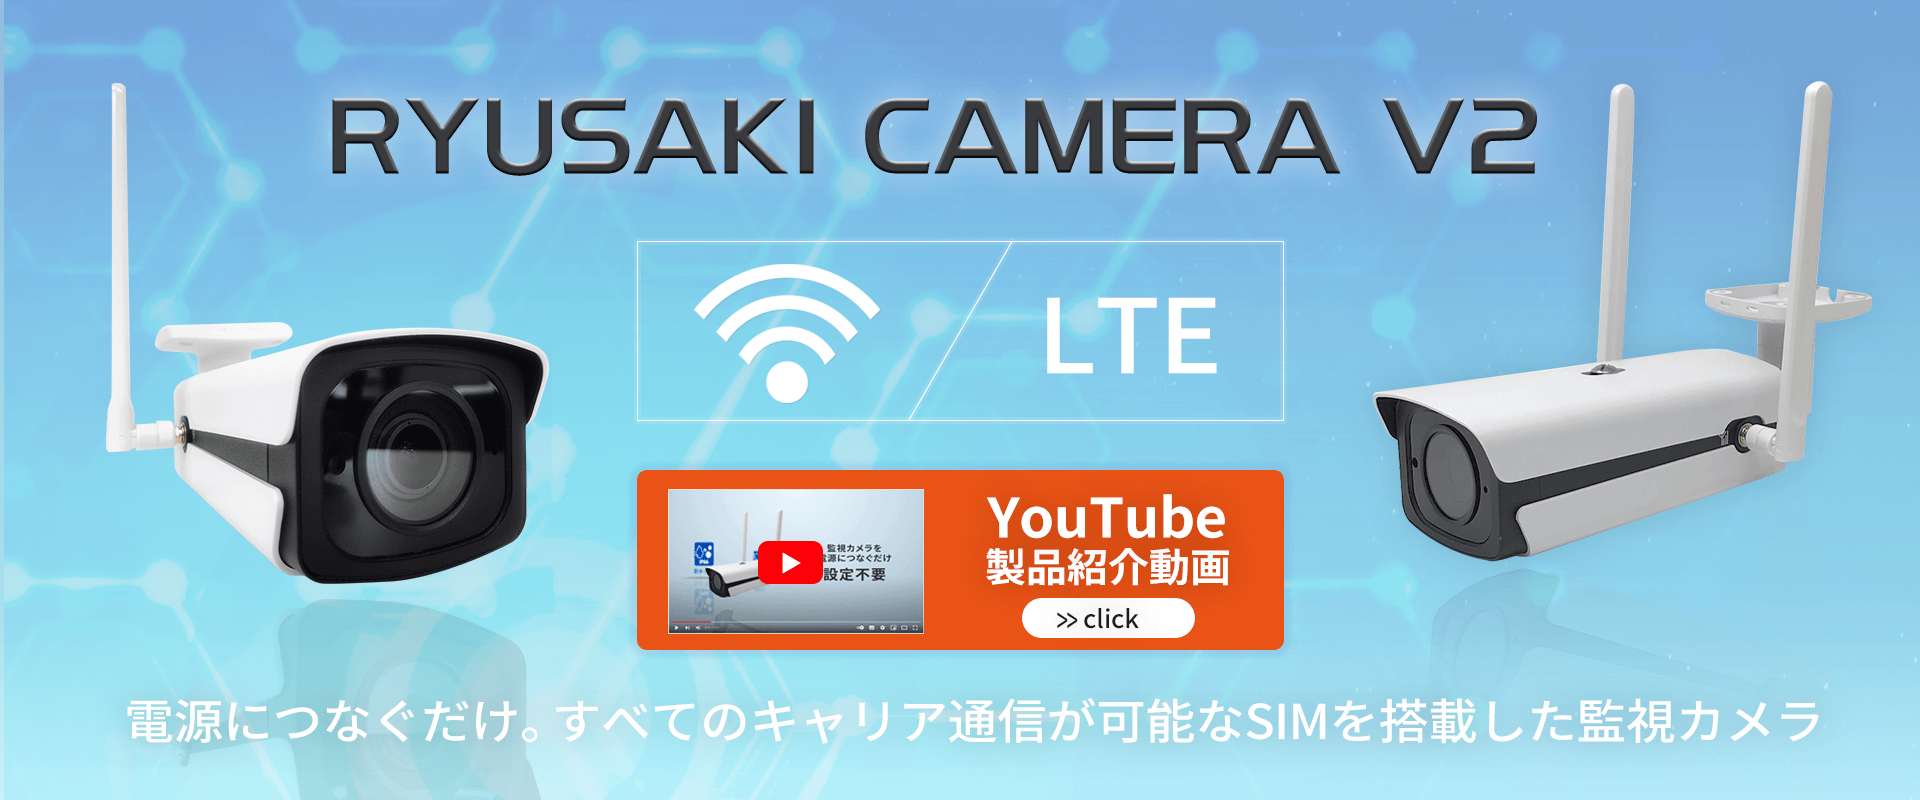 電源につなぐだけ すべてのキャリア通信が可能なSIMを搭載した監視カメラ RYUSAKI CAMERA V2